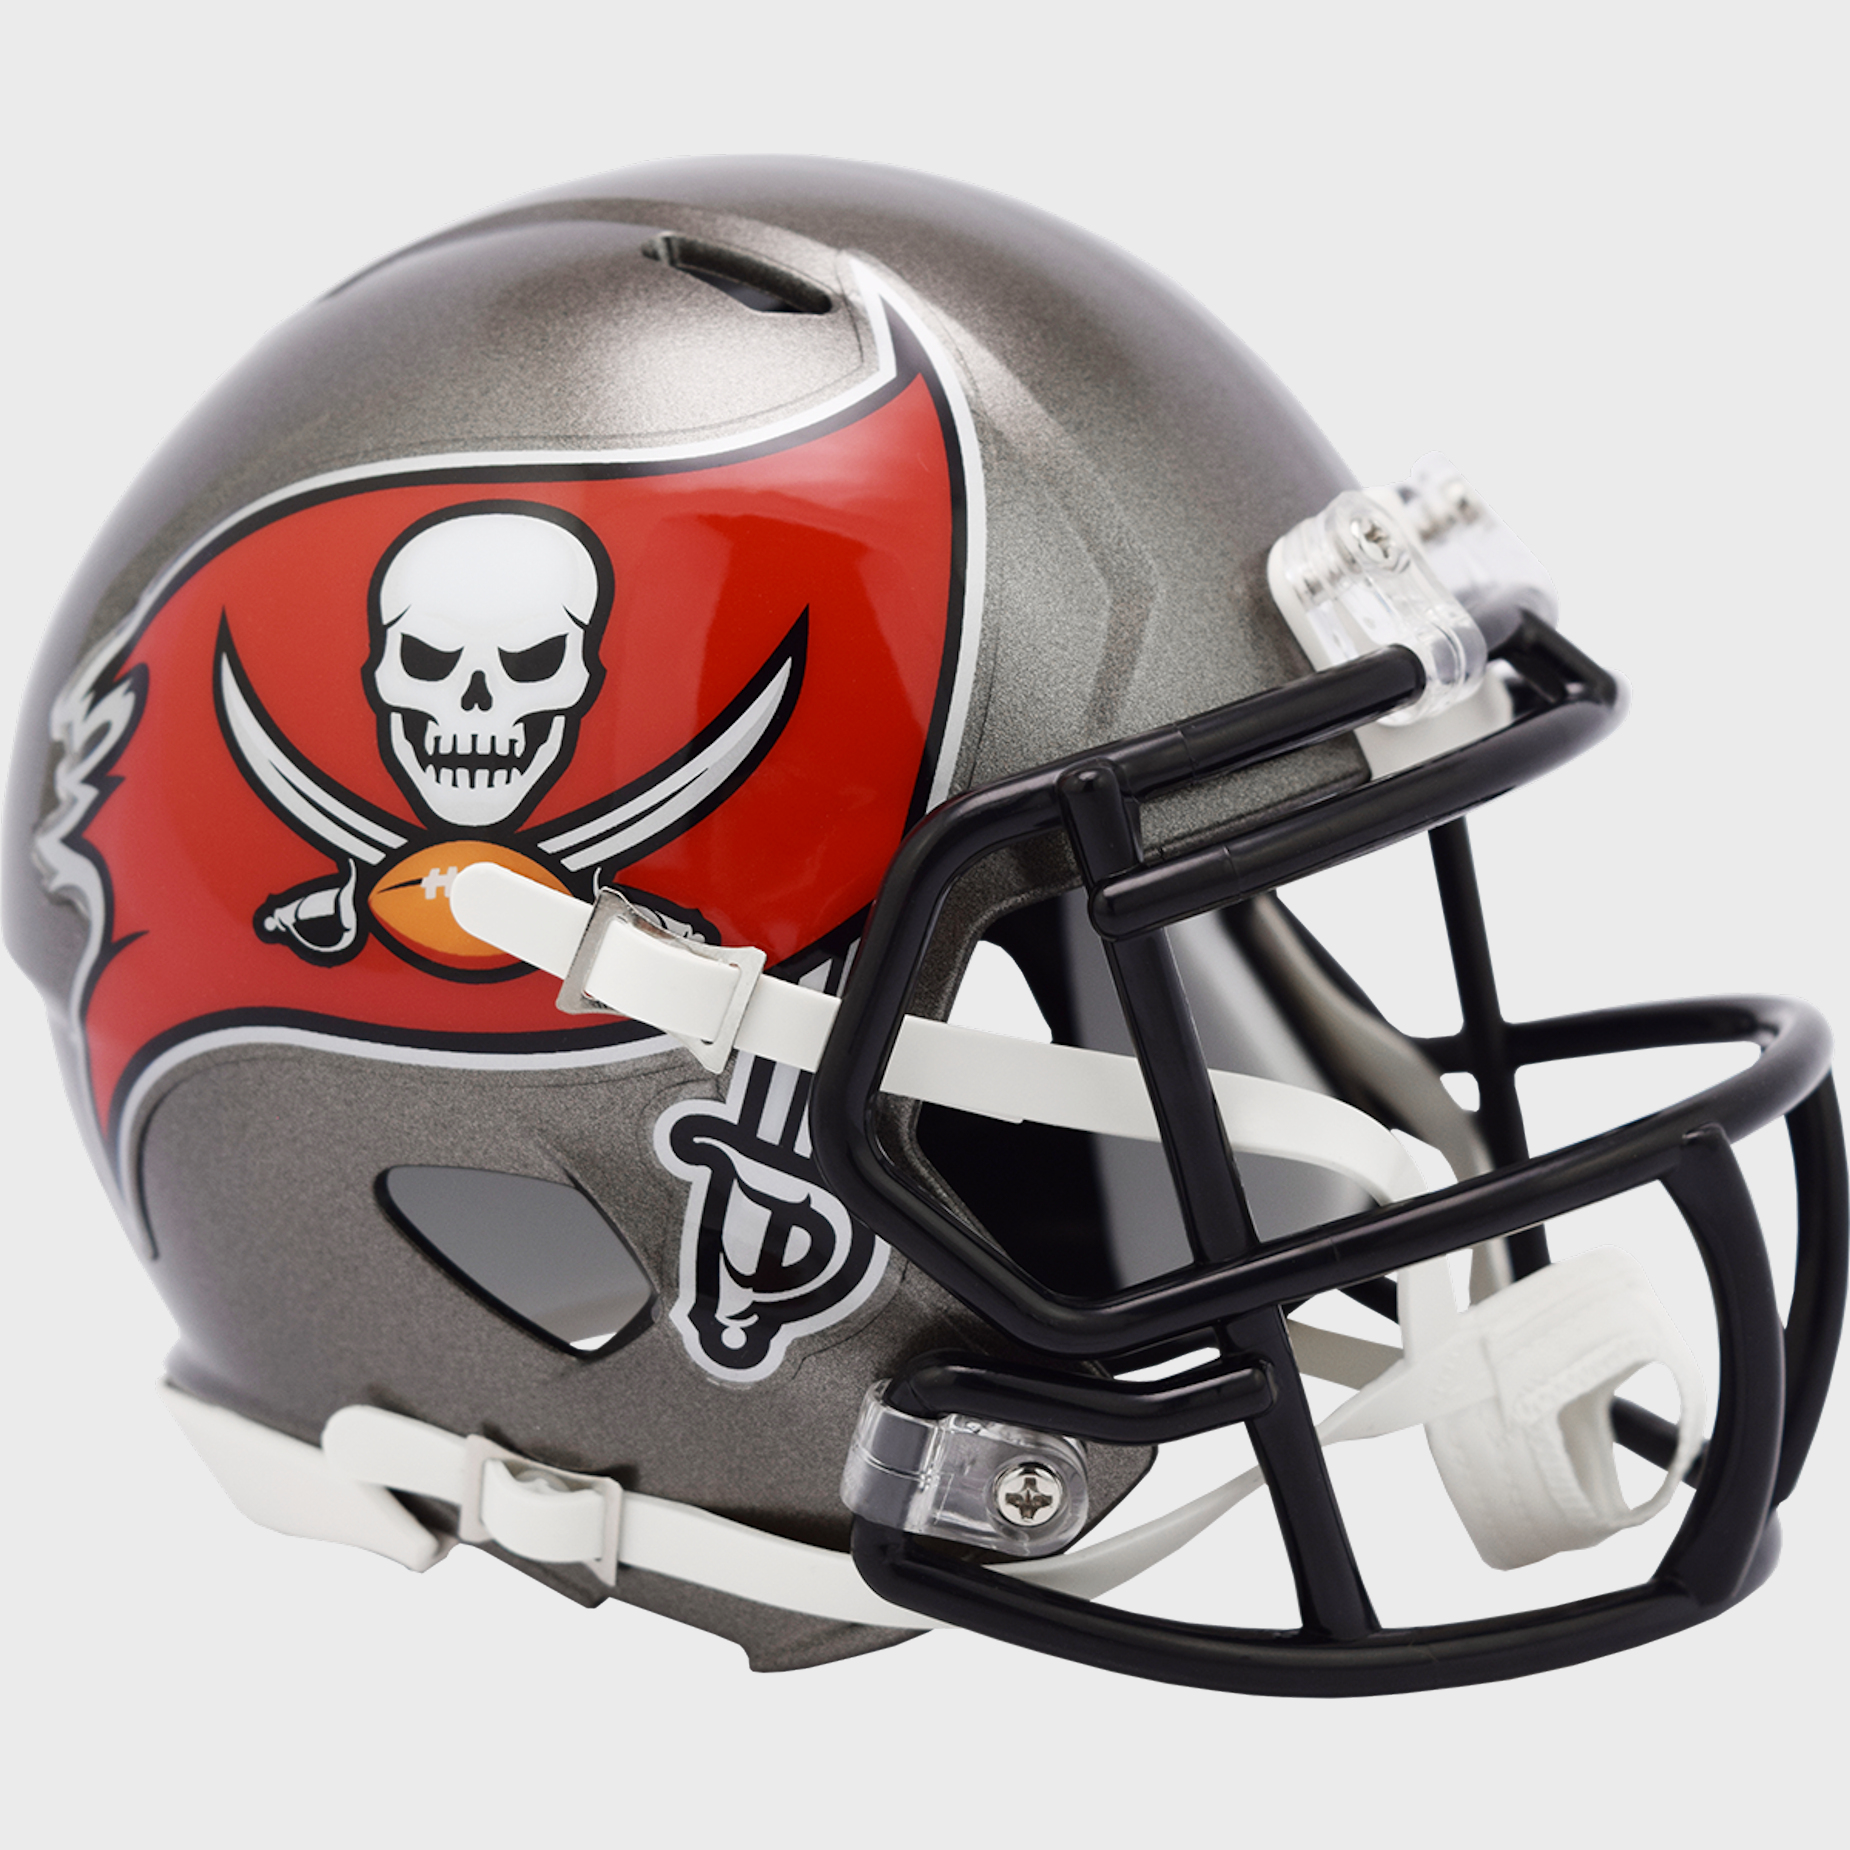 Tampa Bay Buccaneers mini helmet